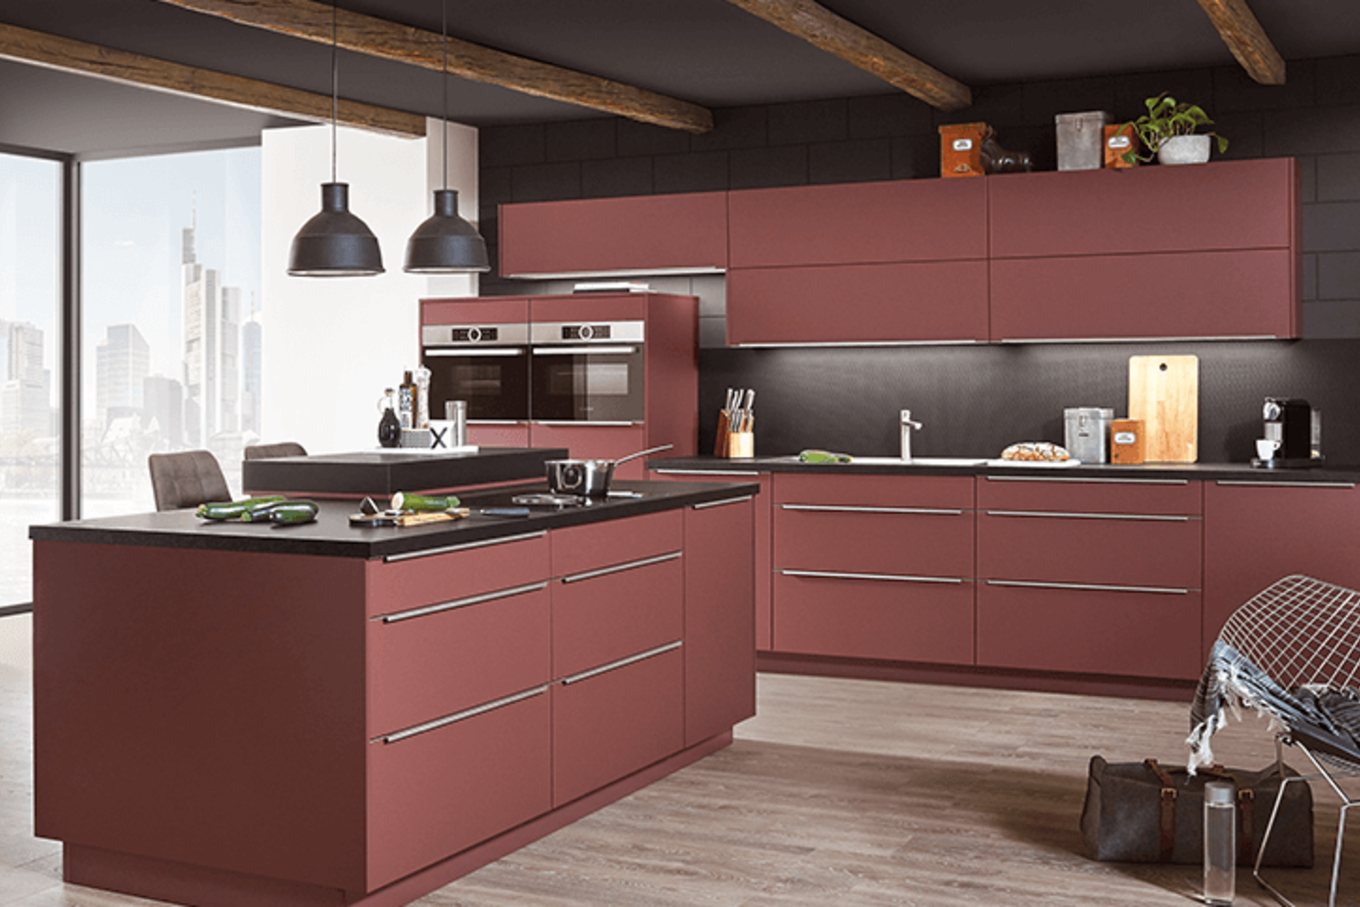 Moderne Küche mit Farbe. Bild: inpuncto